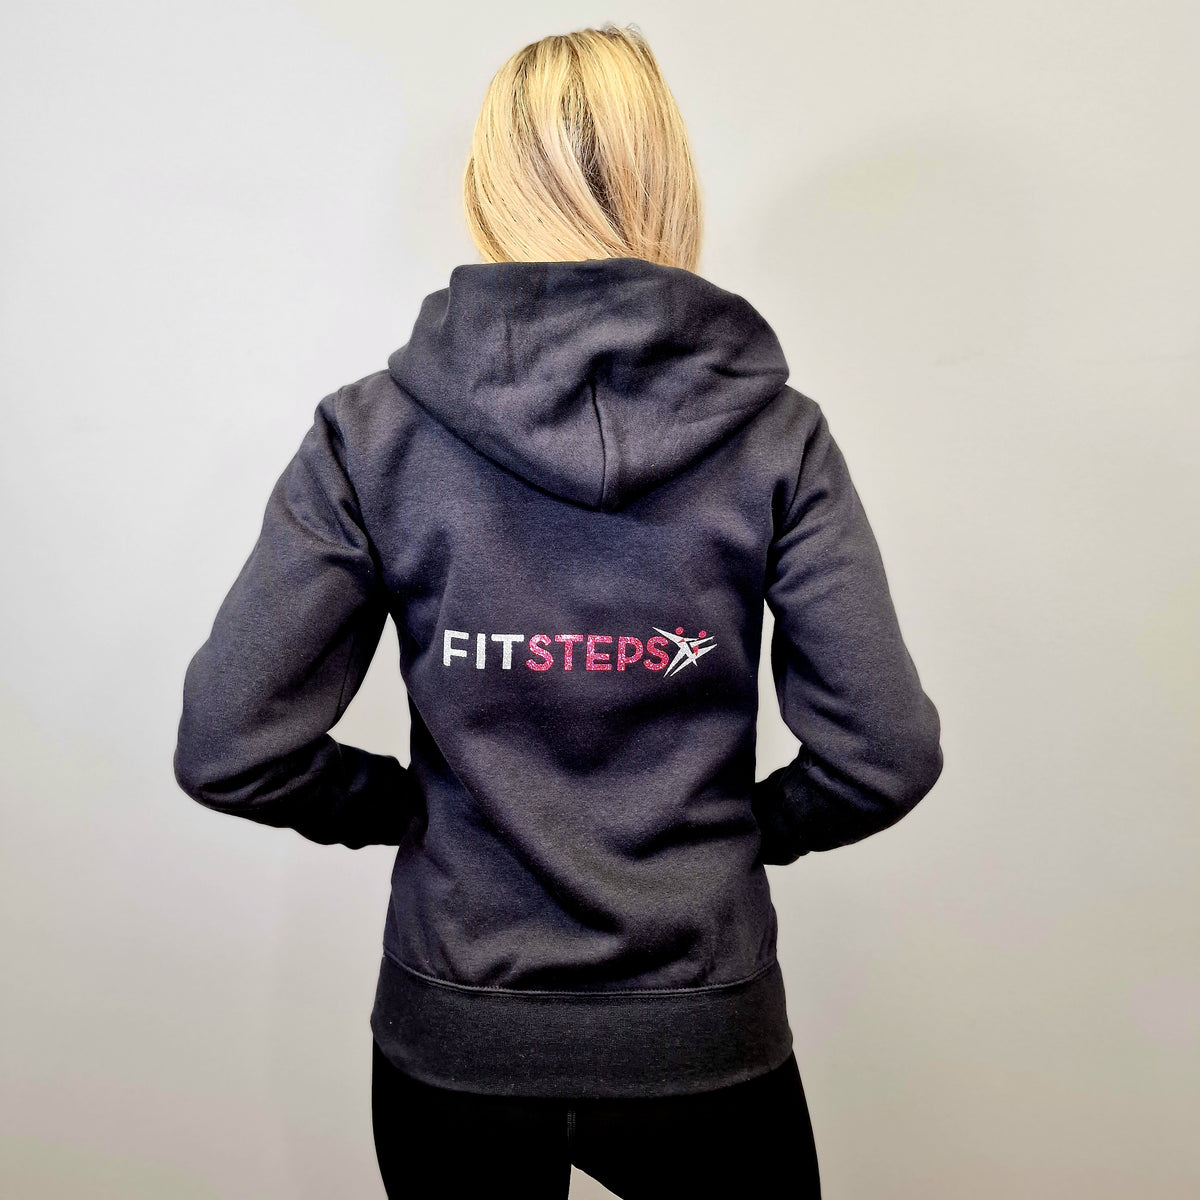 FitSteps Women's Zip Front Premium Hoodie